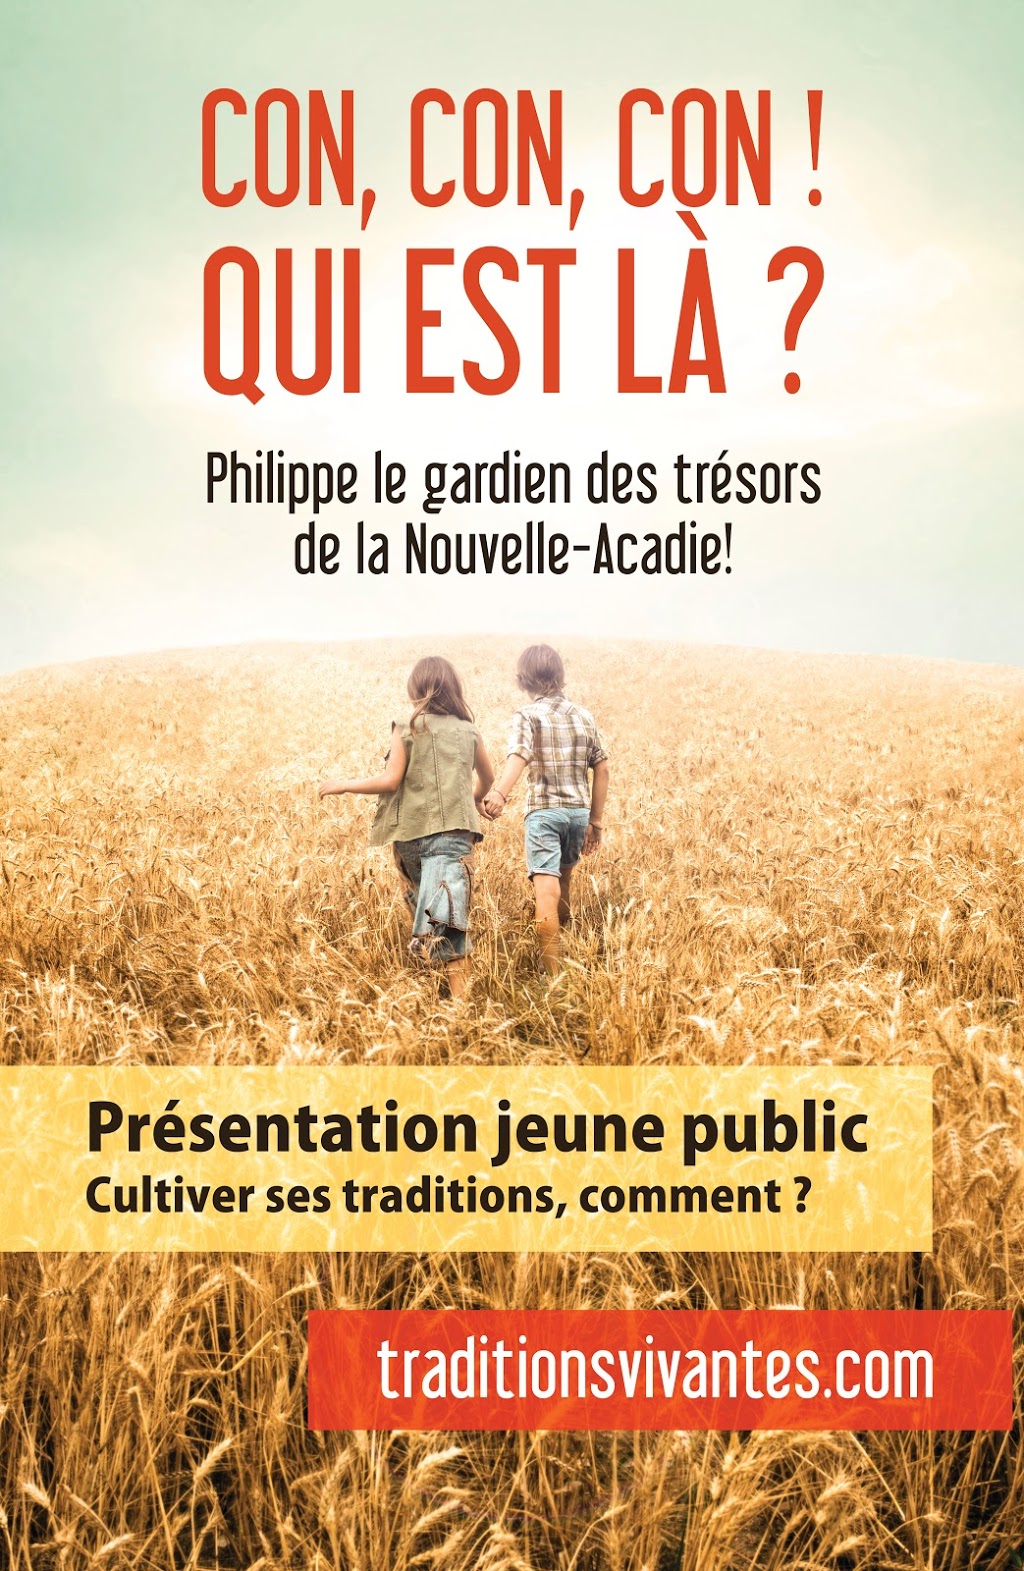 Philippe Jetté / Intervenant en traditions vivantes | 2395 Chemin du Ruisseau Saint Georges S, Saint-Jacques, QC J0K 2R0, Canada | Phone: (450) 397-2313